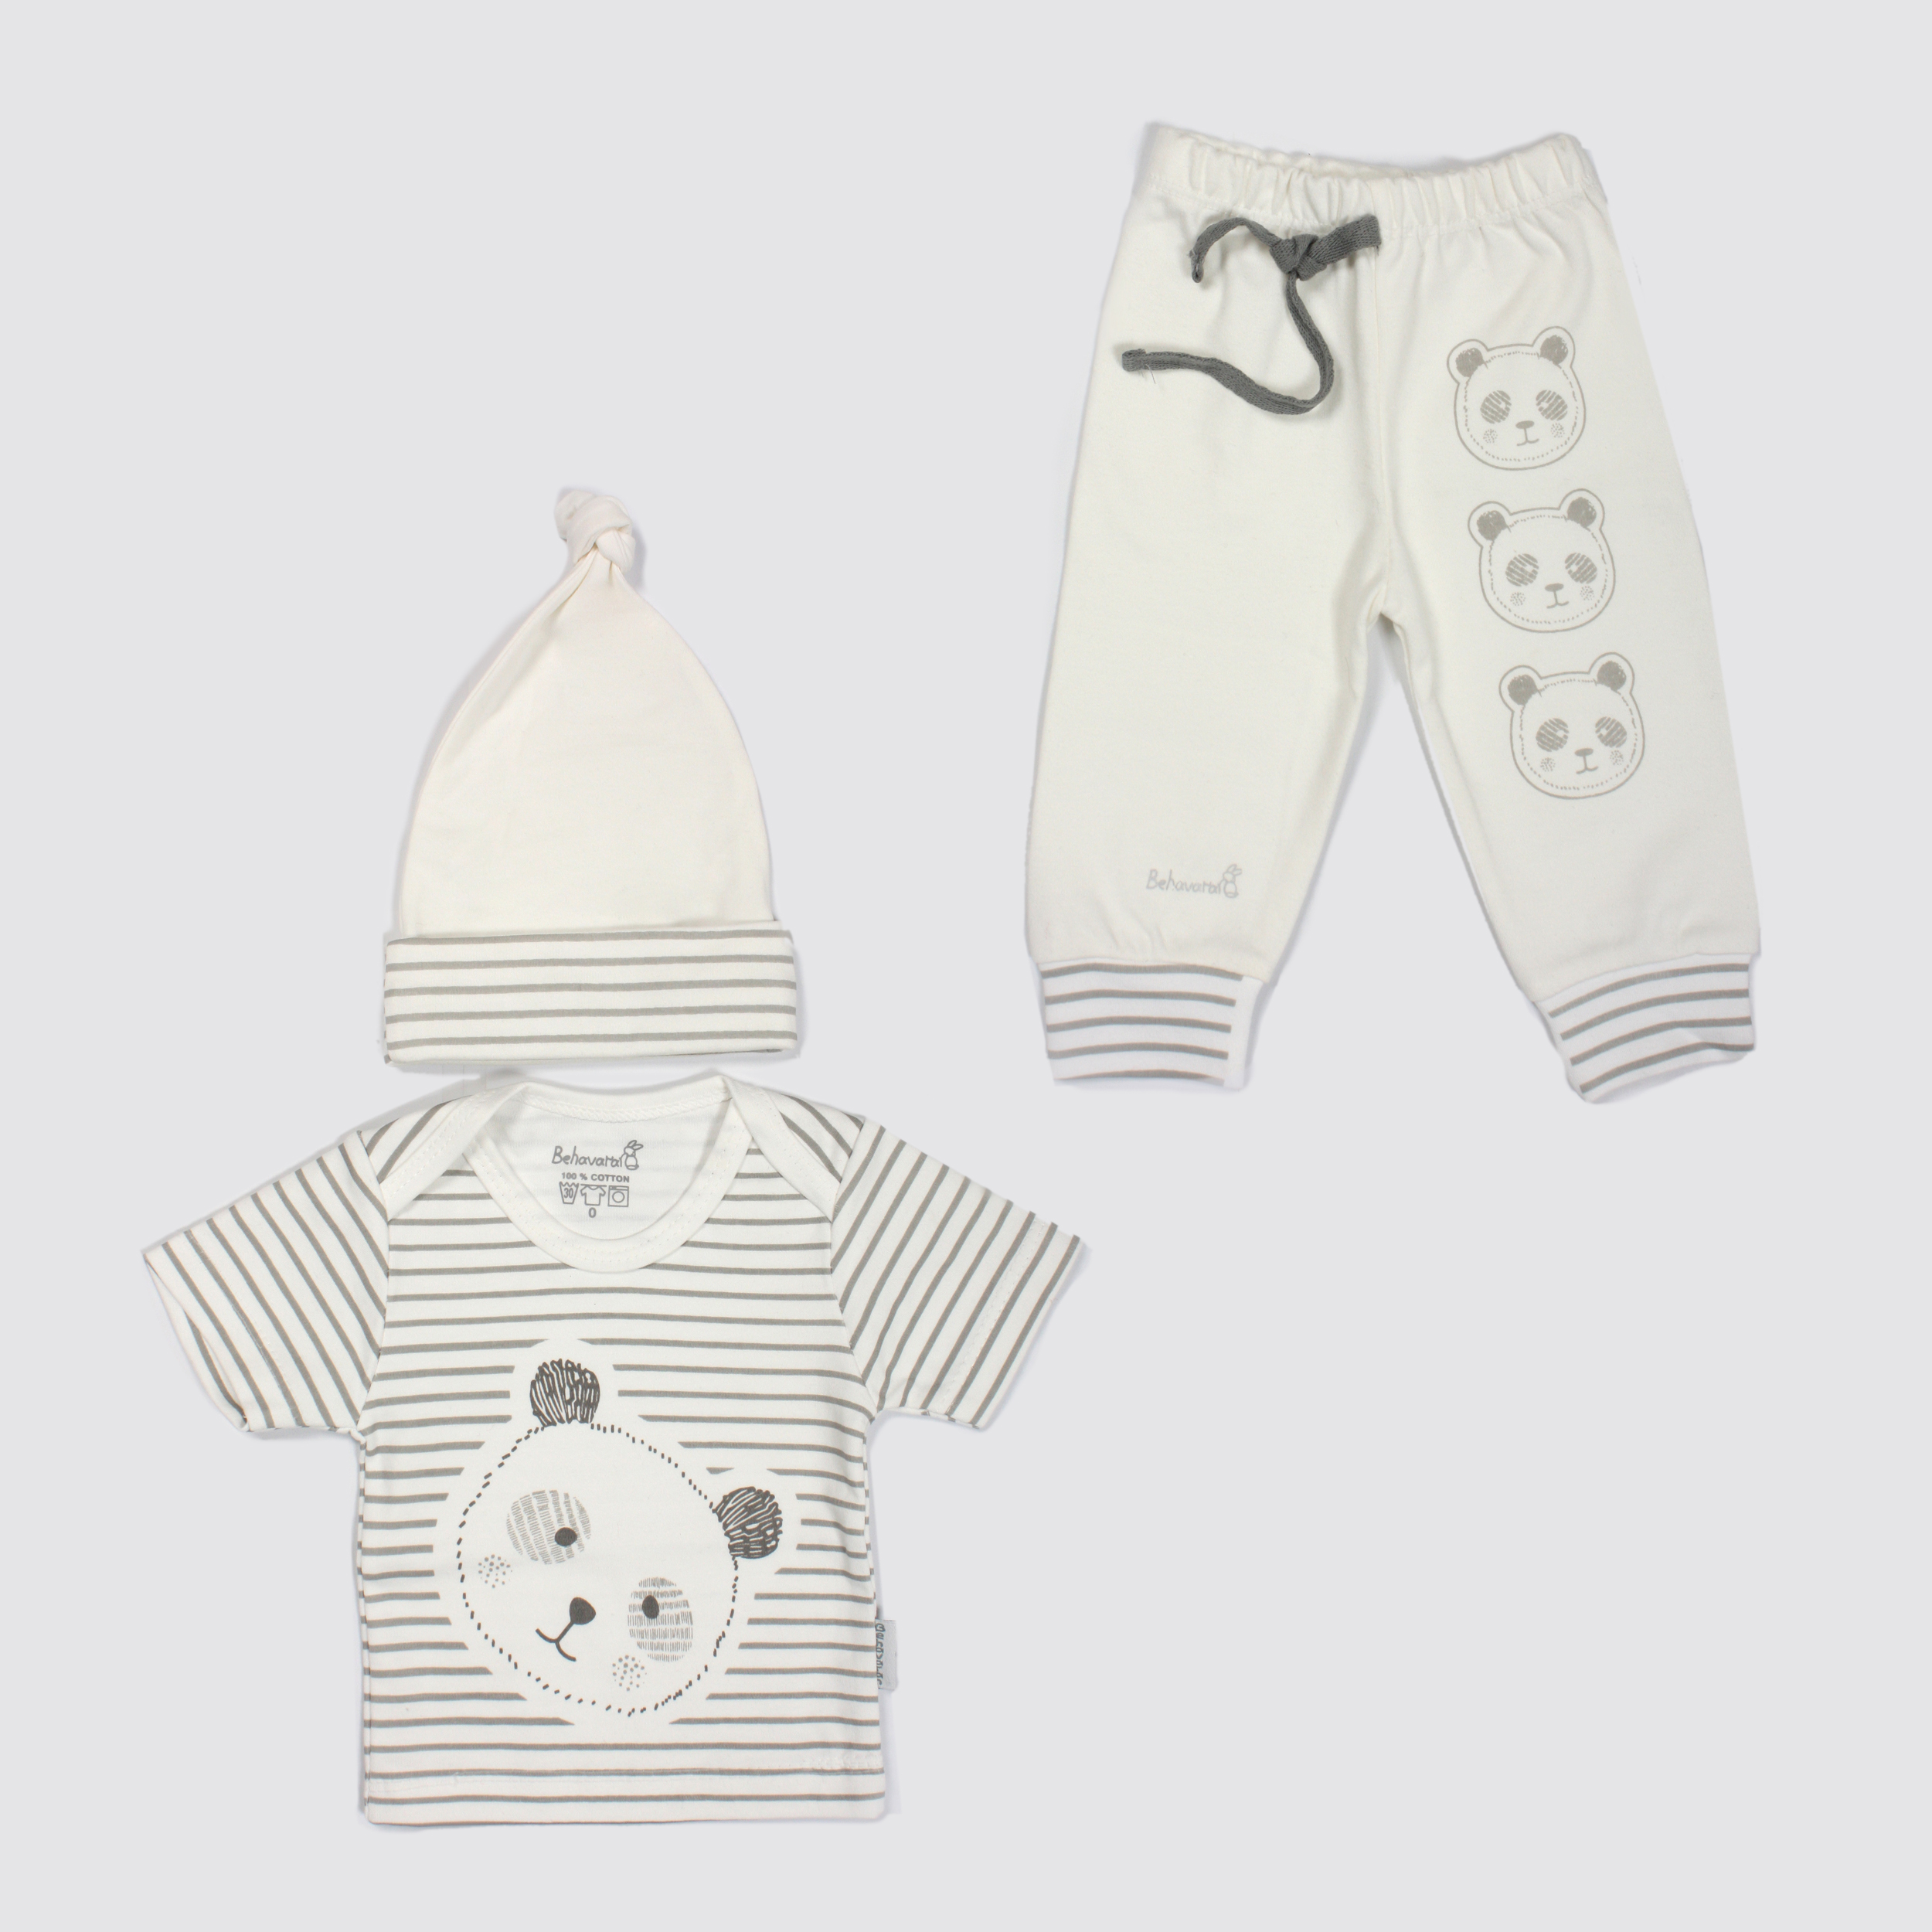 نقد و بررسی ست 3 تکه لباس نوزادی به آوران مدل پاندا توسط خریداران